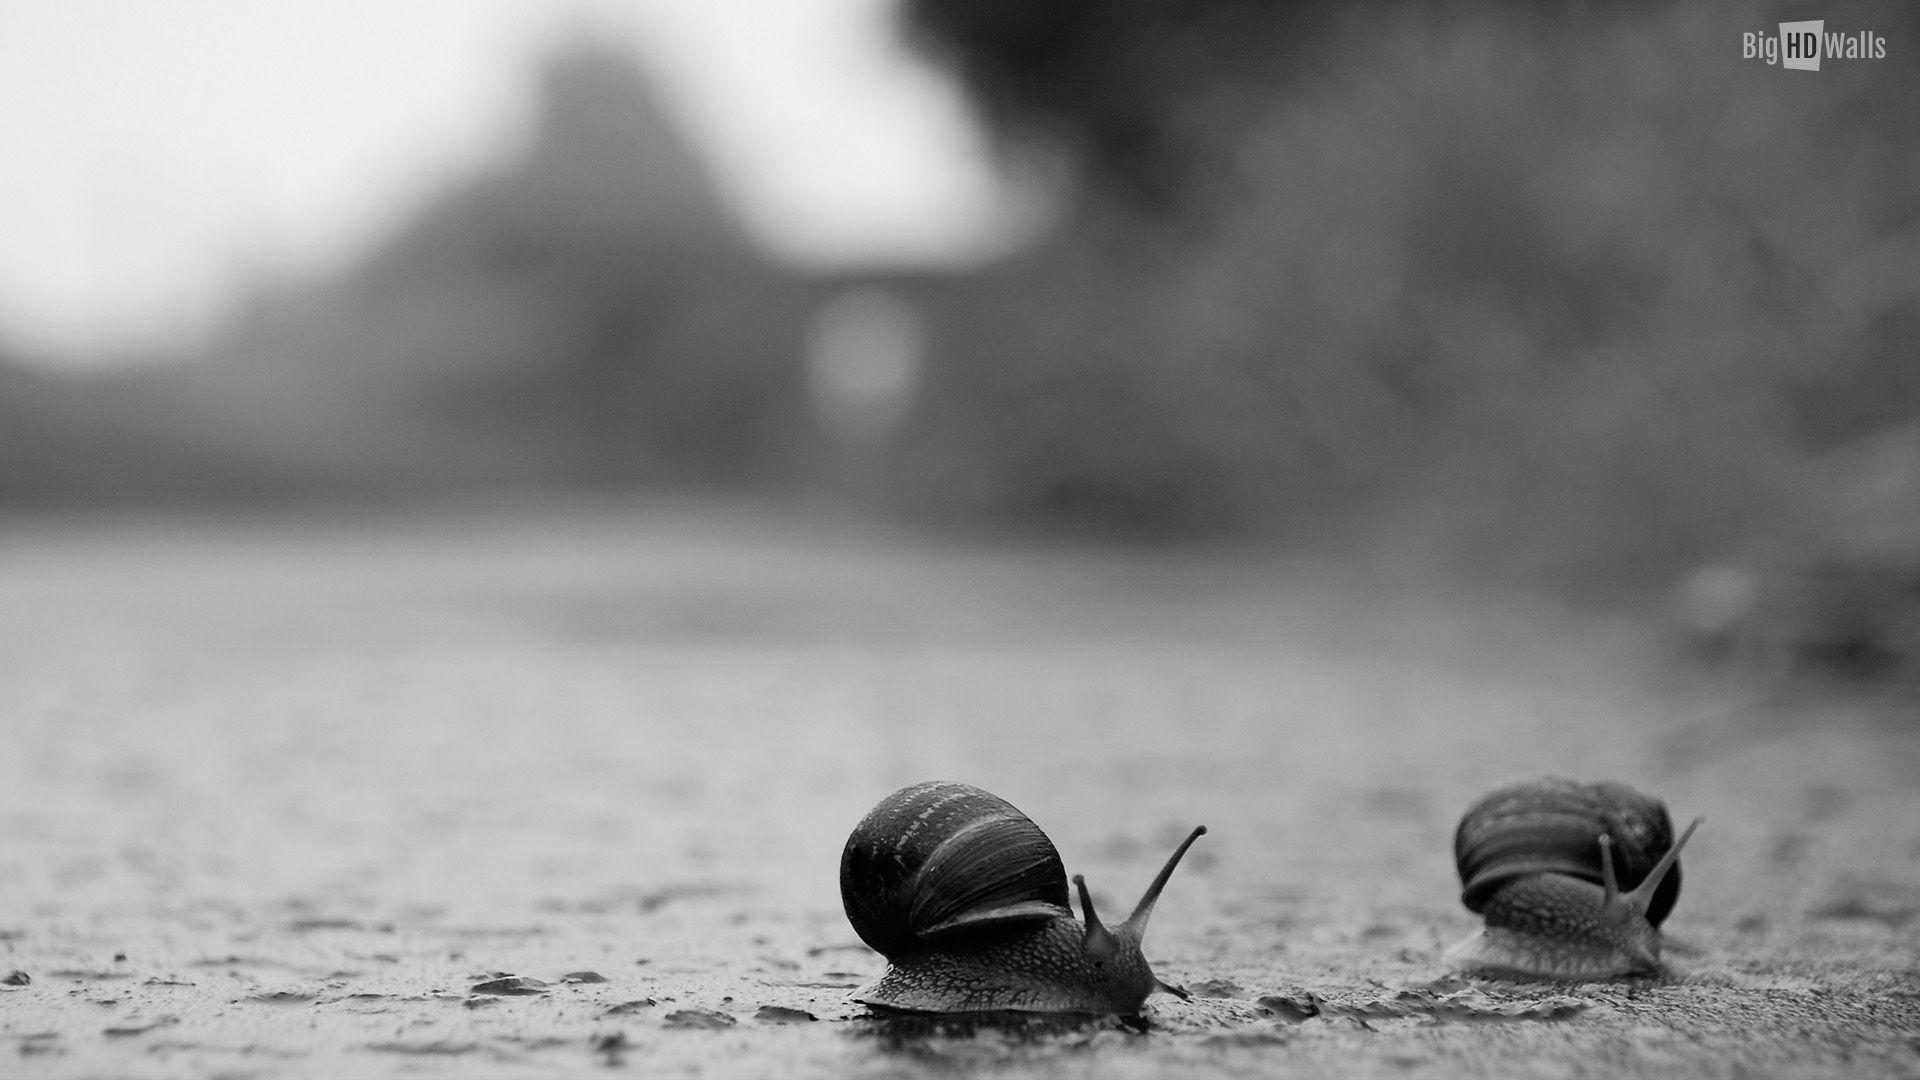 Snails crossing road in the rain HD Wallpaper